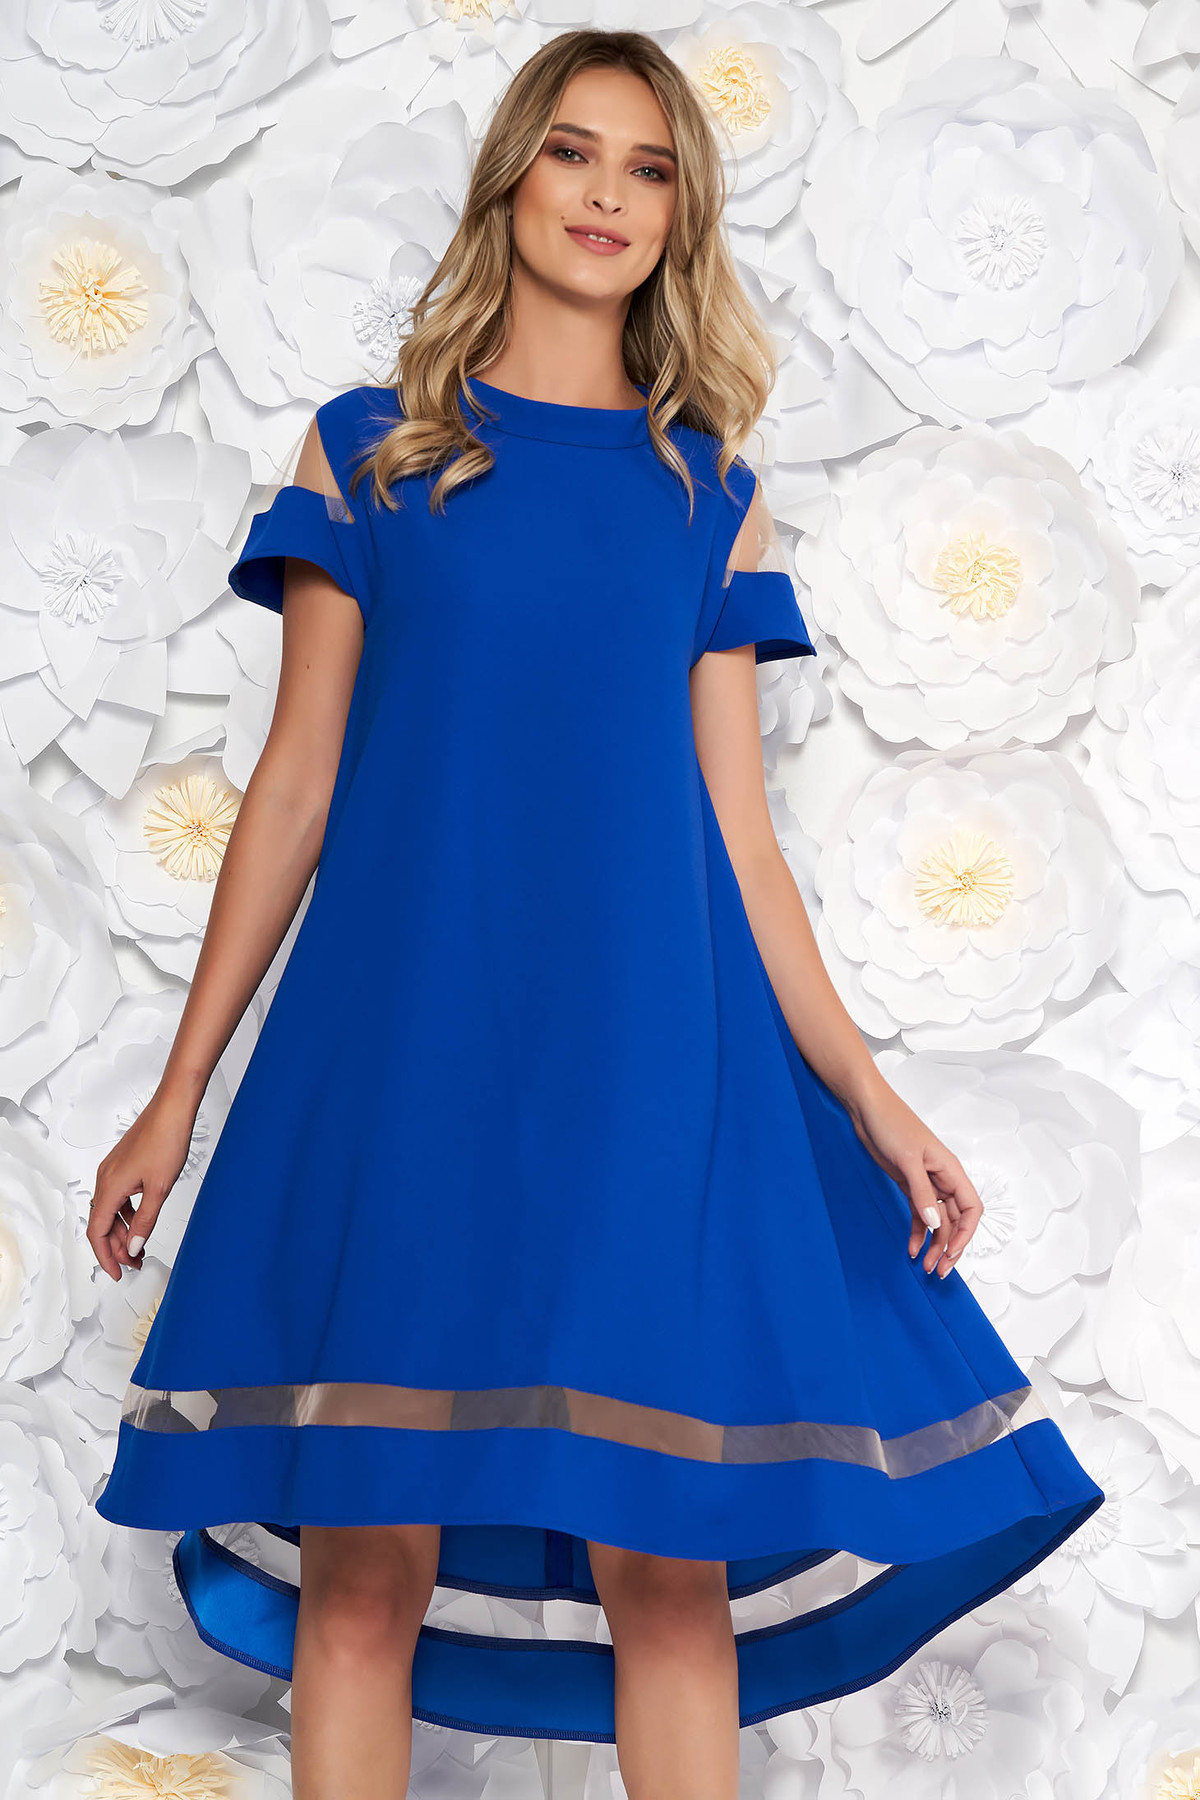 Rochie albastra eleganta cu croi larg asimetrica din material subtire cu maneci scurte